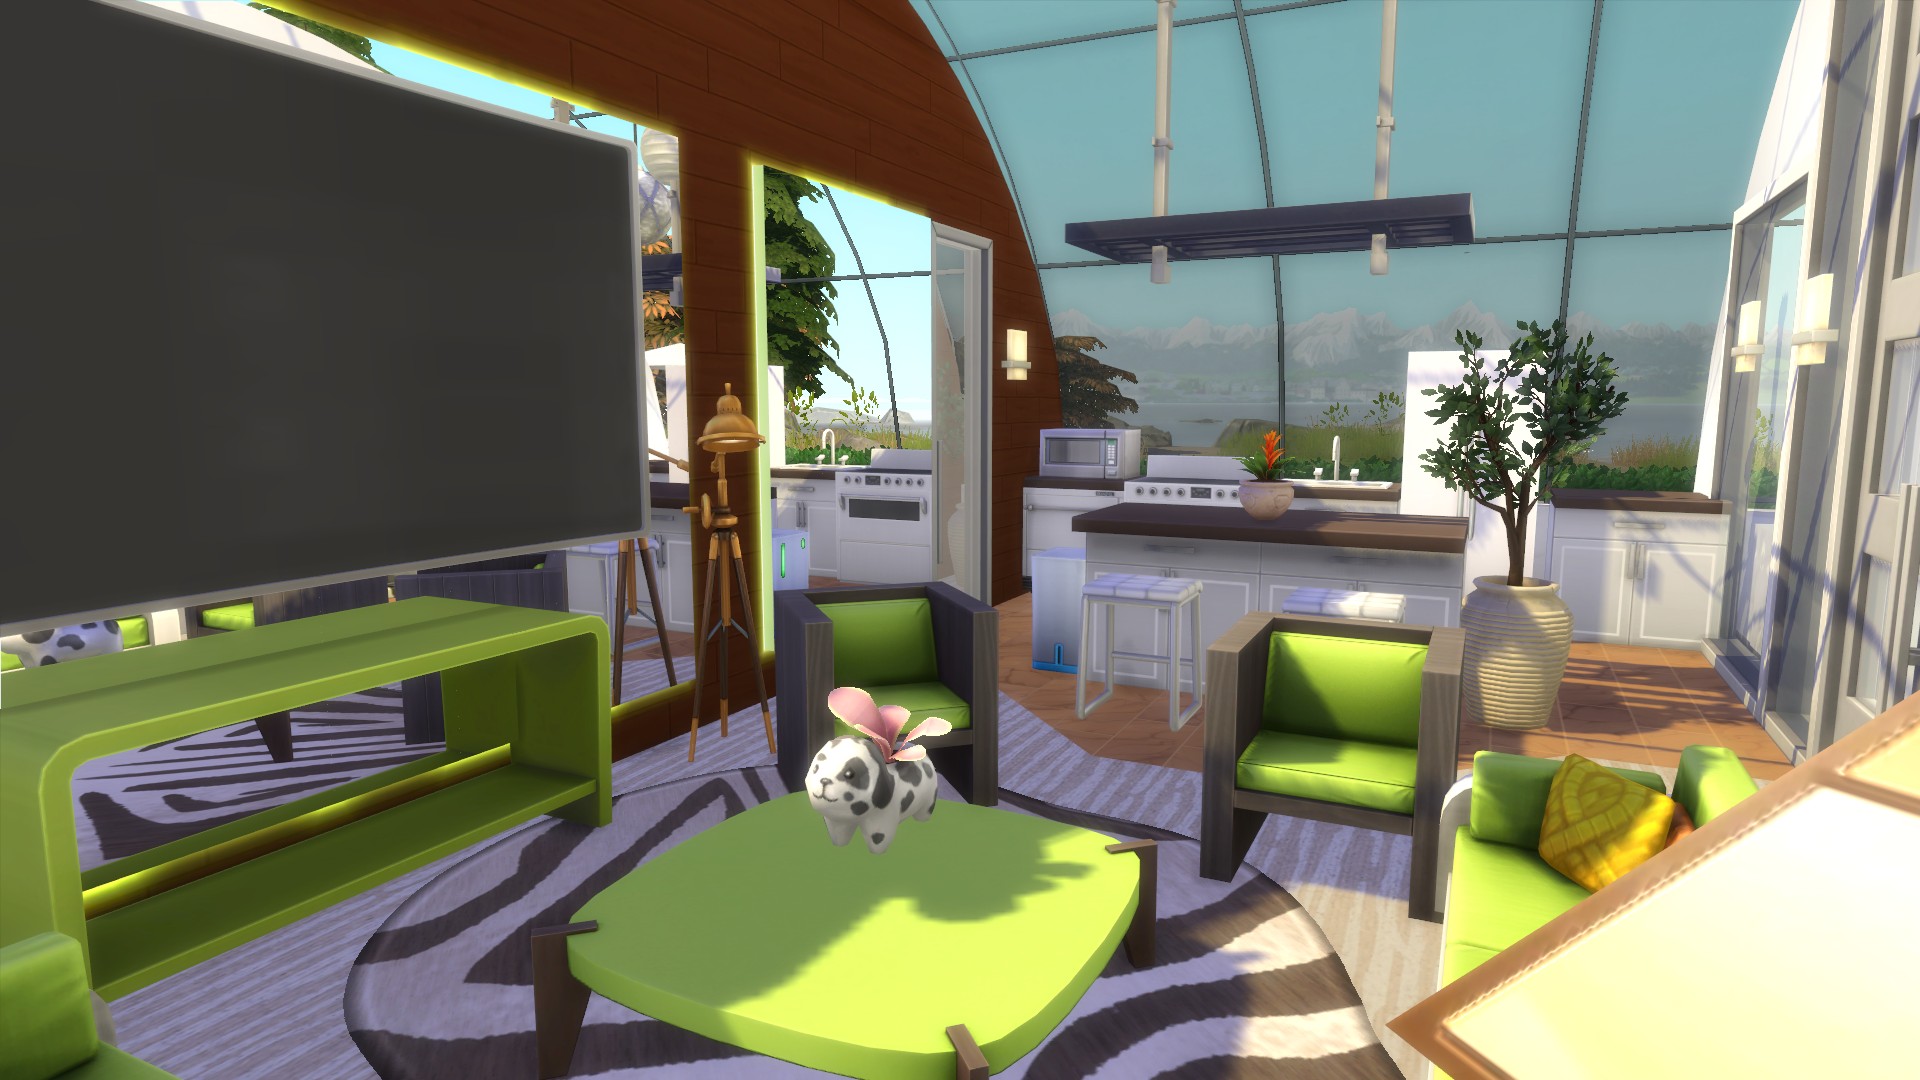 The Sims 4: aprenda a construir casas no famoso game de simulação